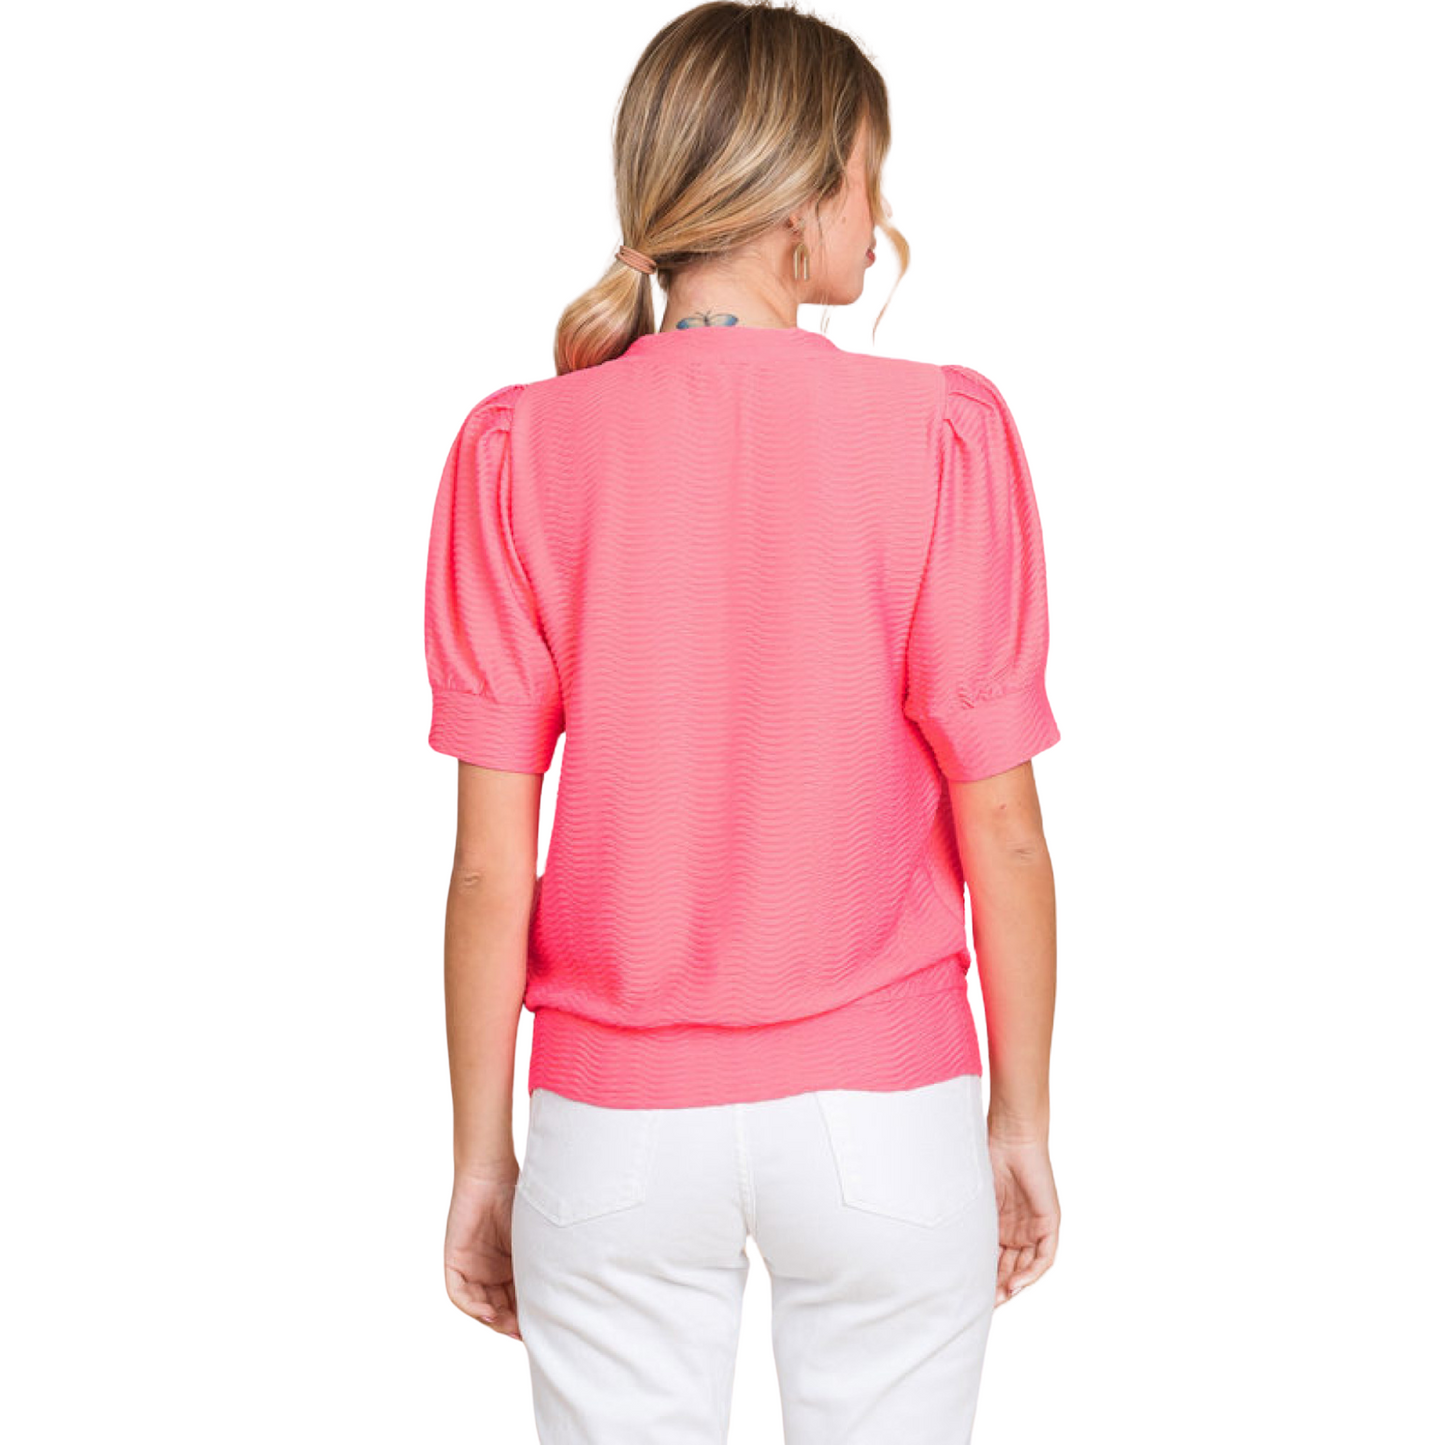 Textured short sleeve top in neon pink